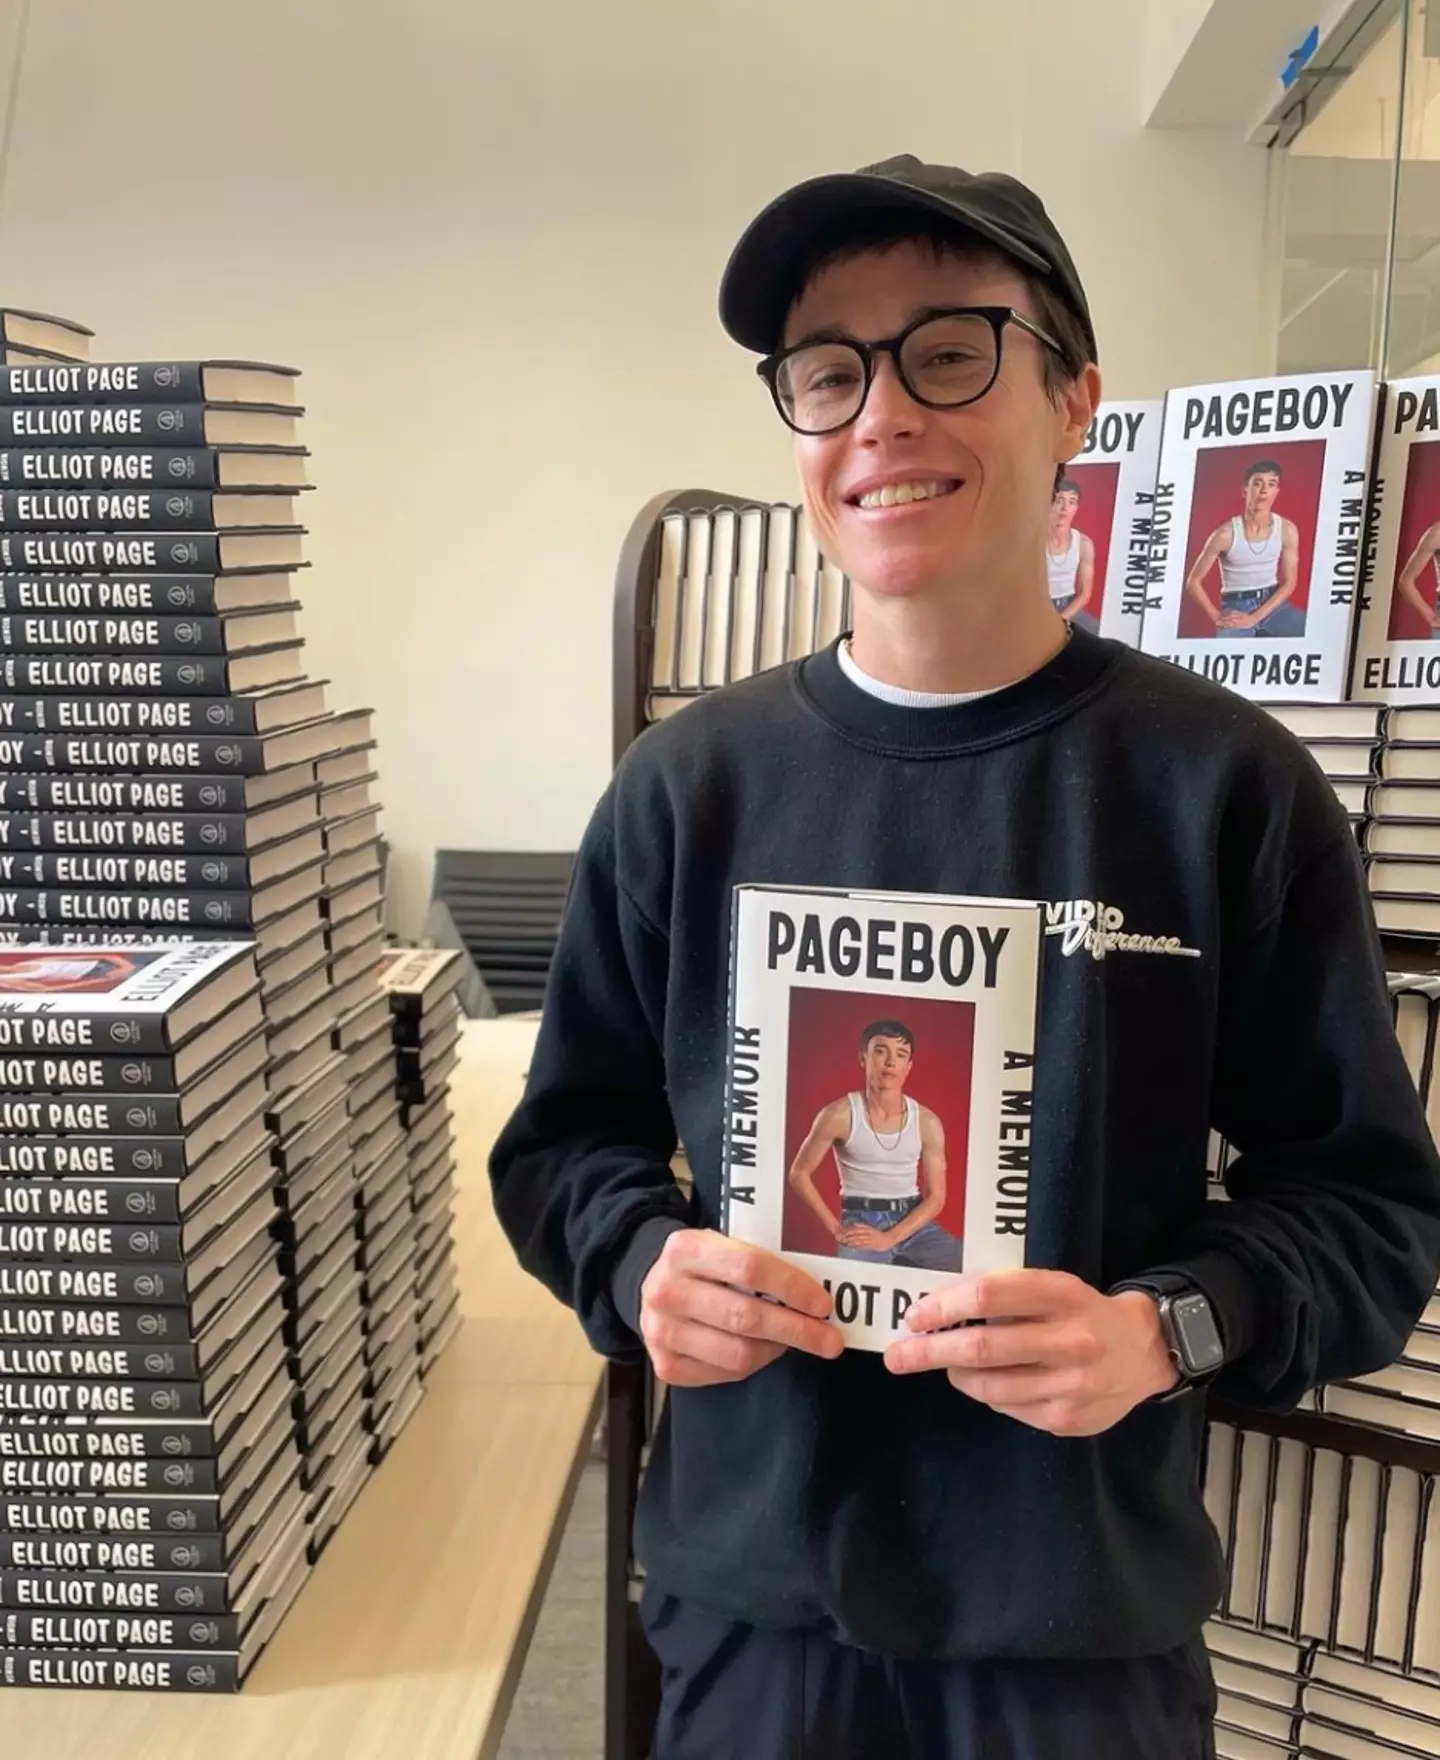 Elliot Page's memoir, Pageboy, was released on 6 June.